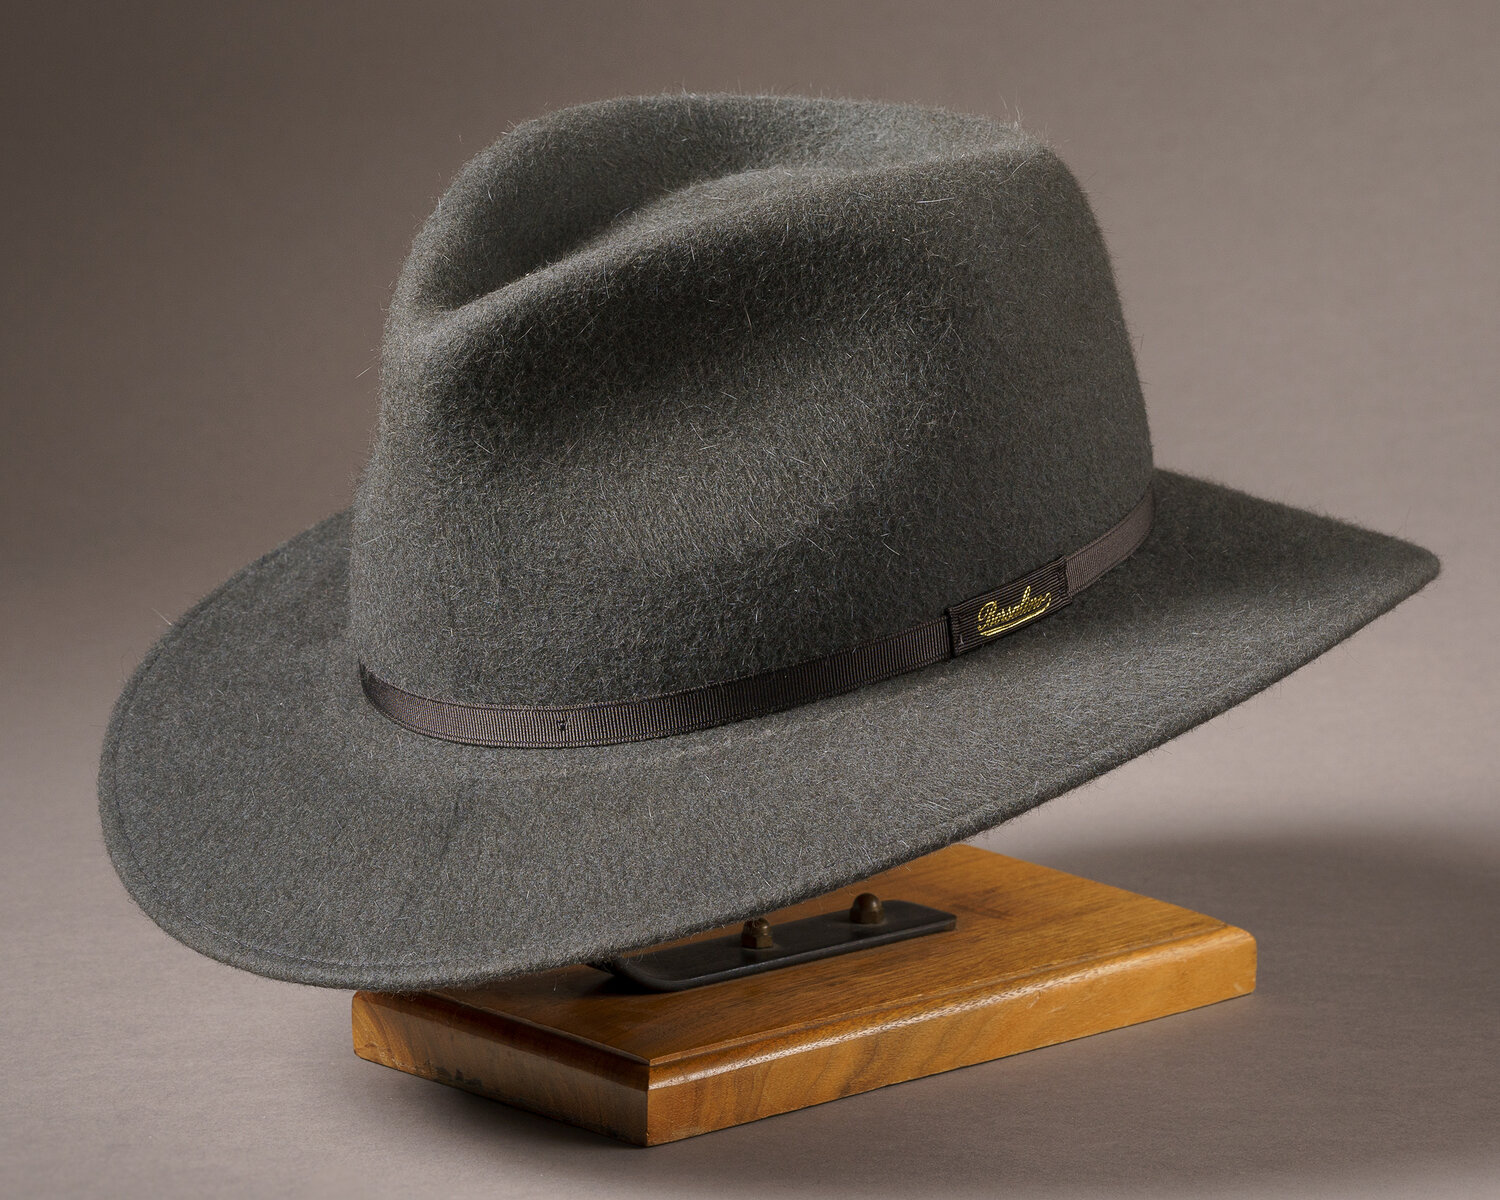 Borsalino Felt Hat in Caramel - The Ben Silver Collection